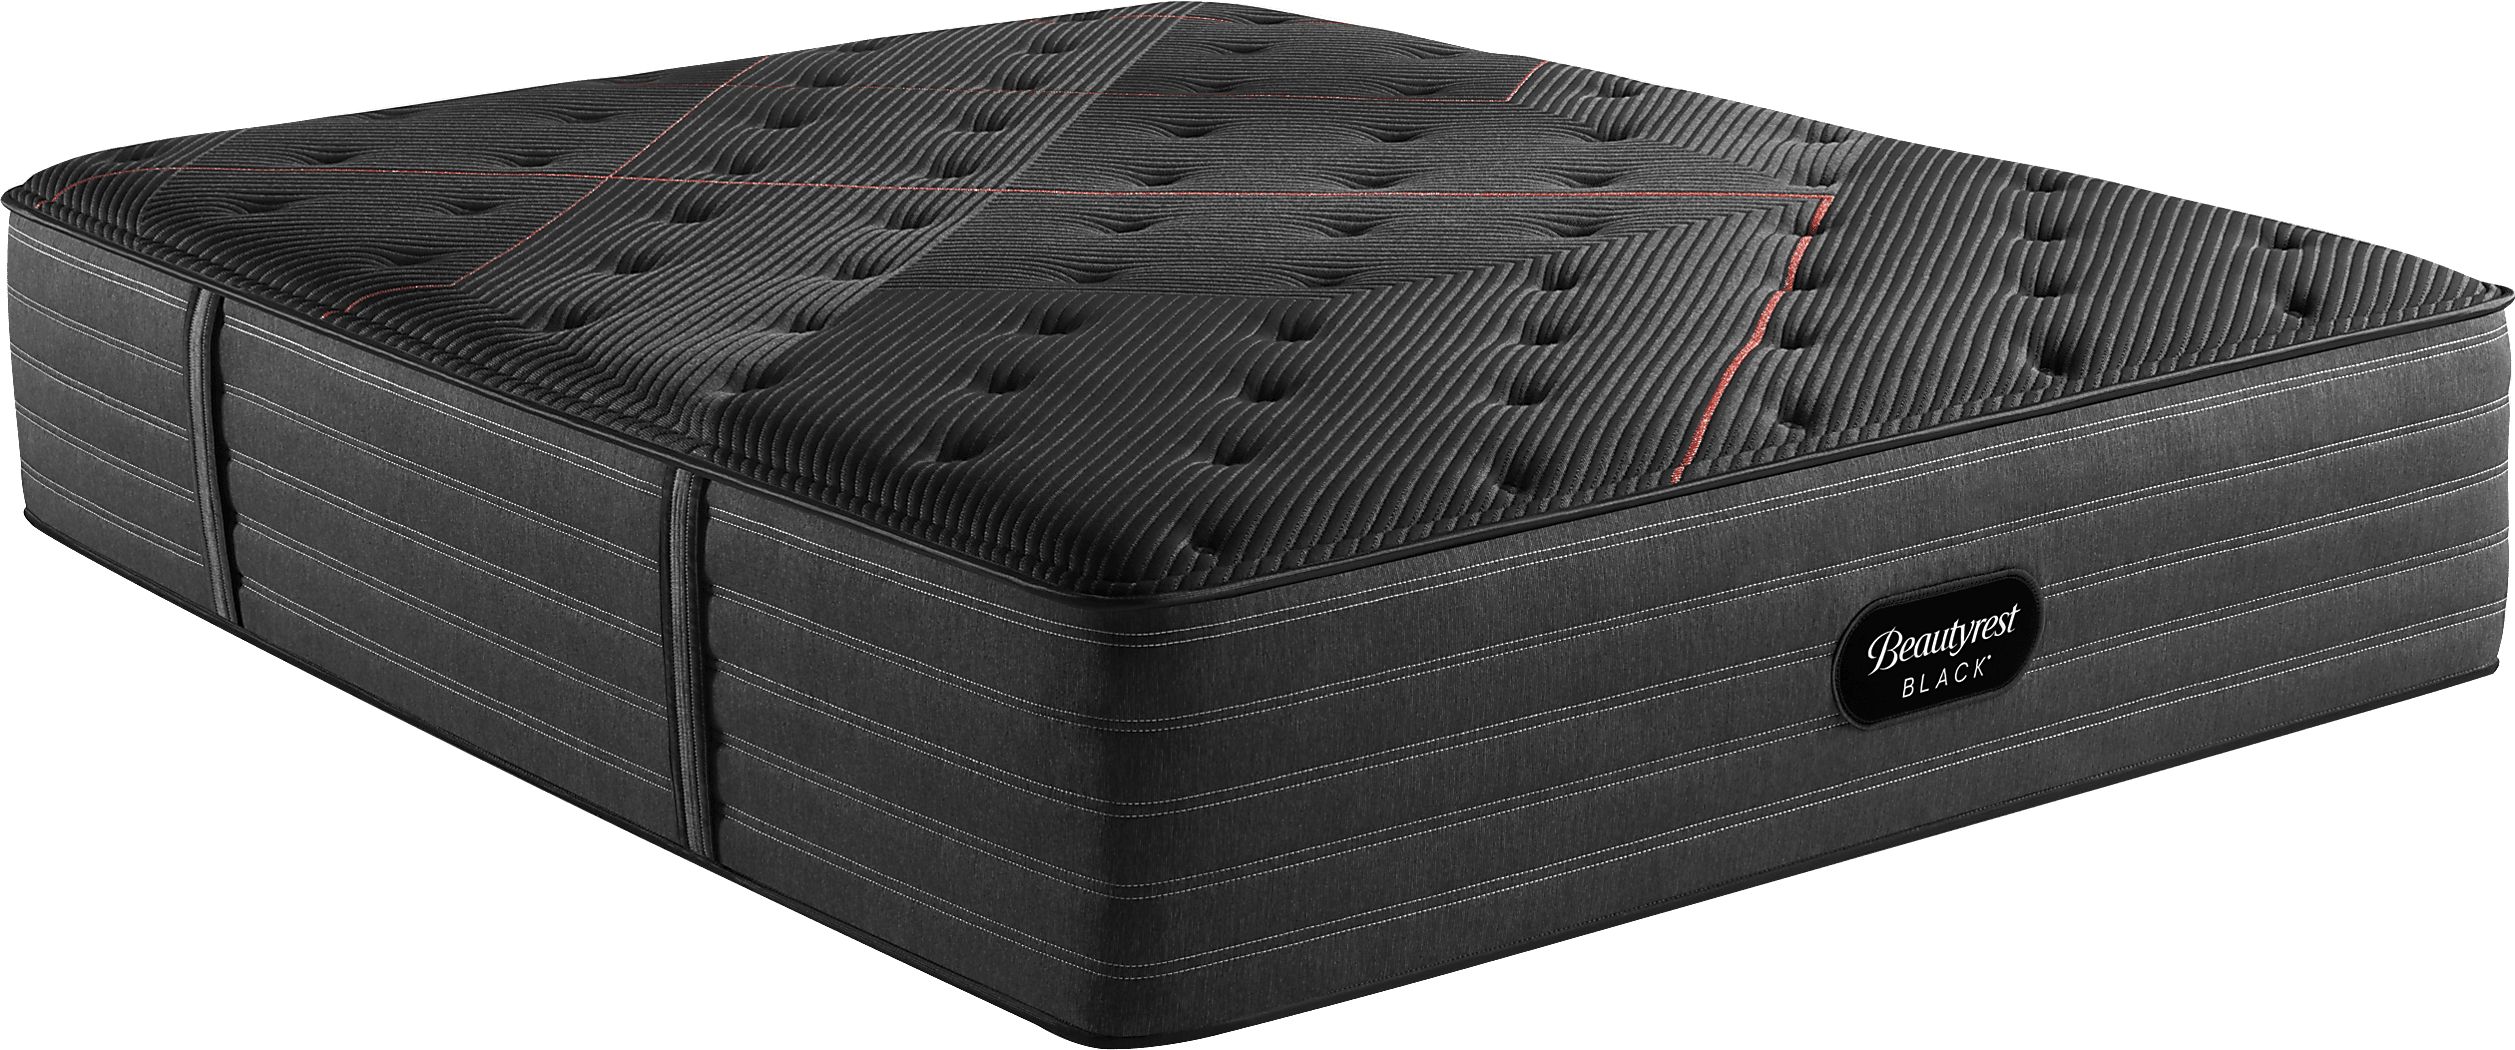 beautyrest black c-class queen mattress